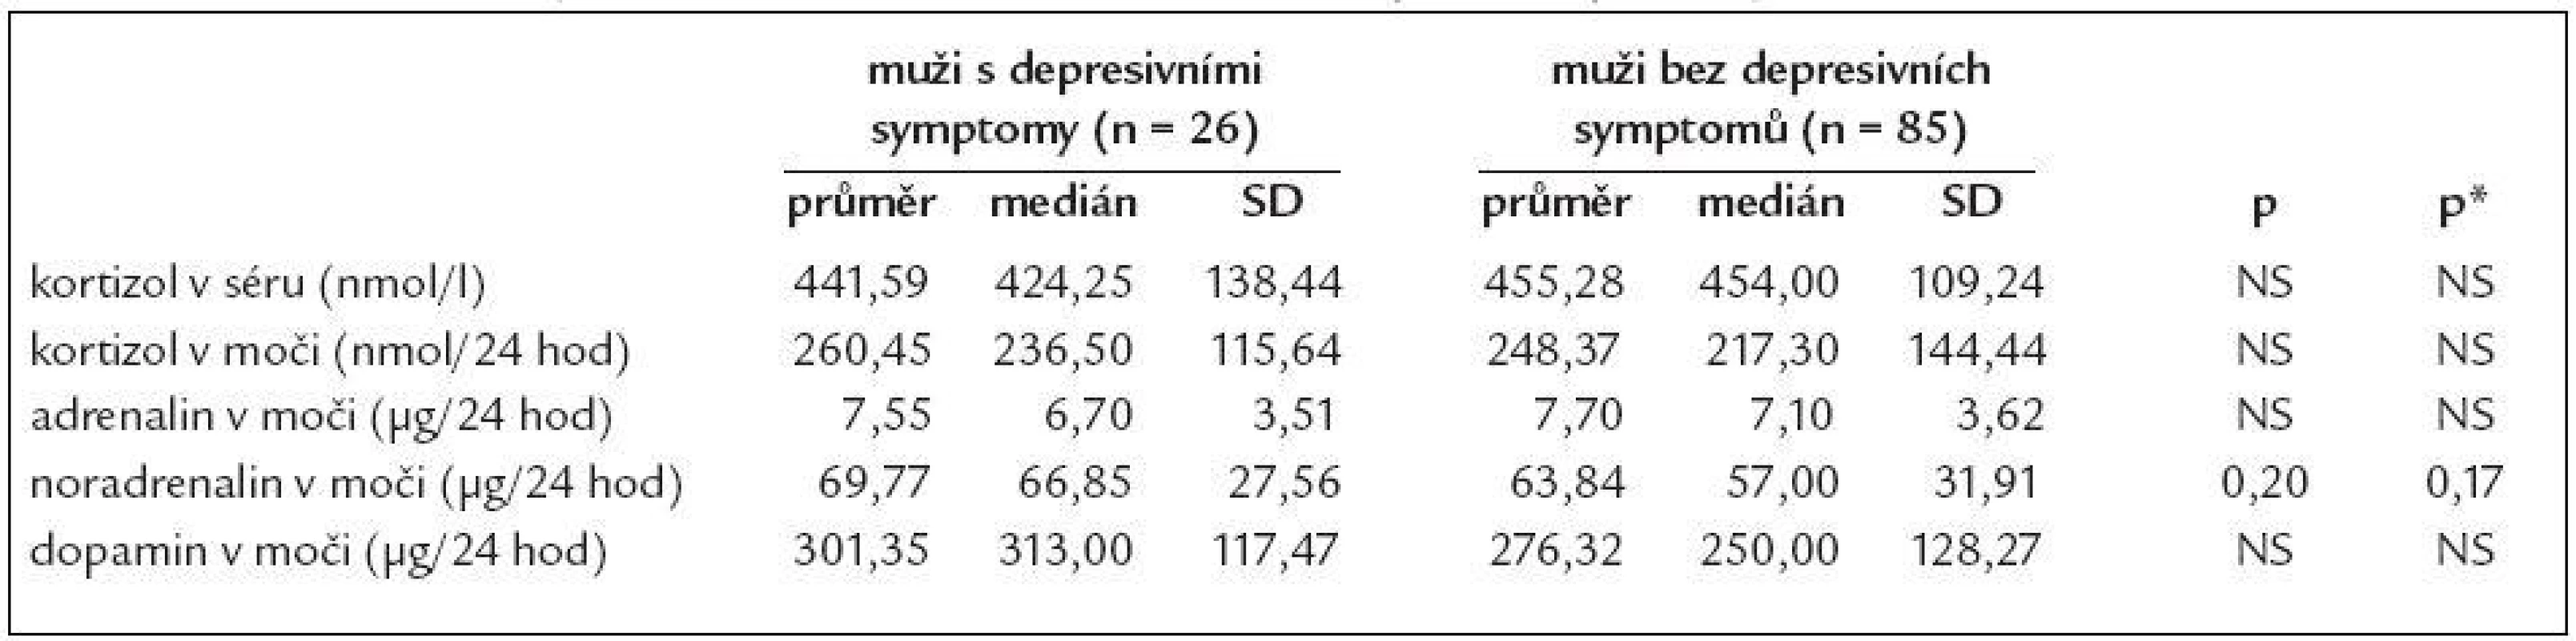 Srovnání některých hormonů v séru a ve sběru moči podle depresivity u mužů.